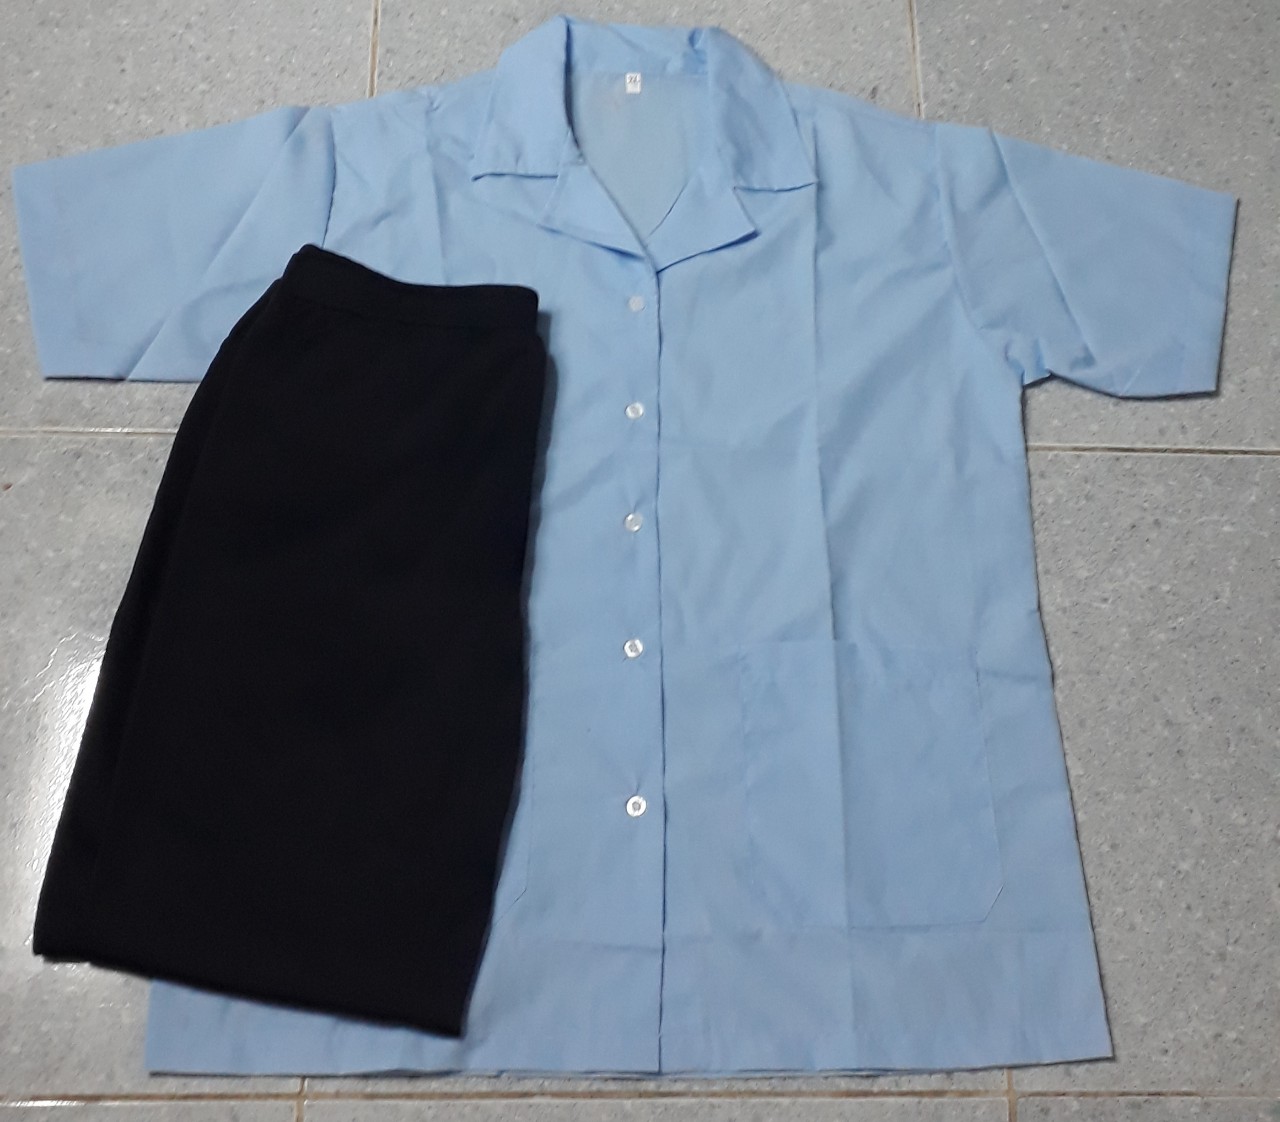 Bộ tạp vụ áo kate siêu màu xanh biển nhạt không viền, quần thun đen